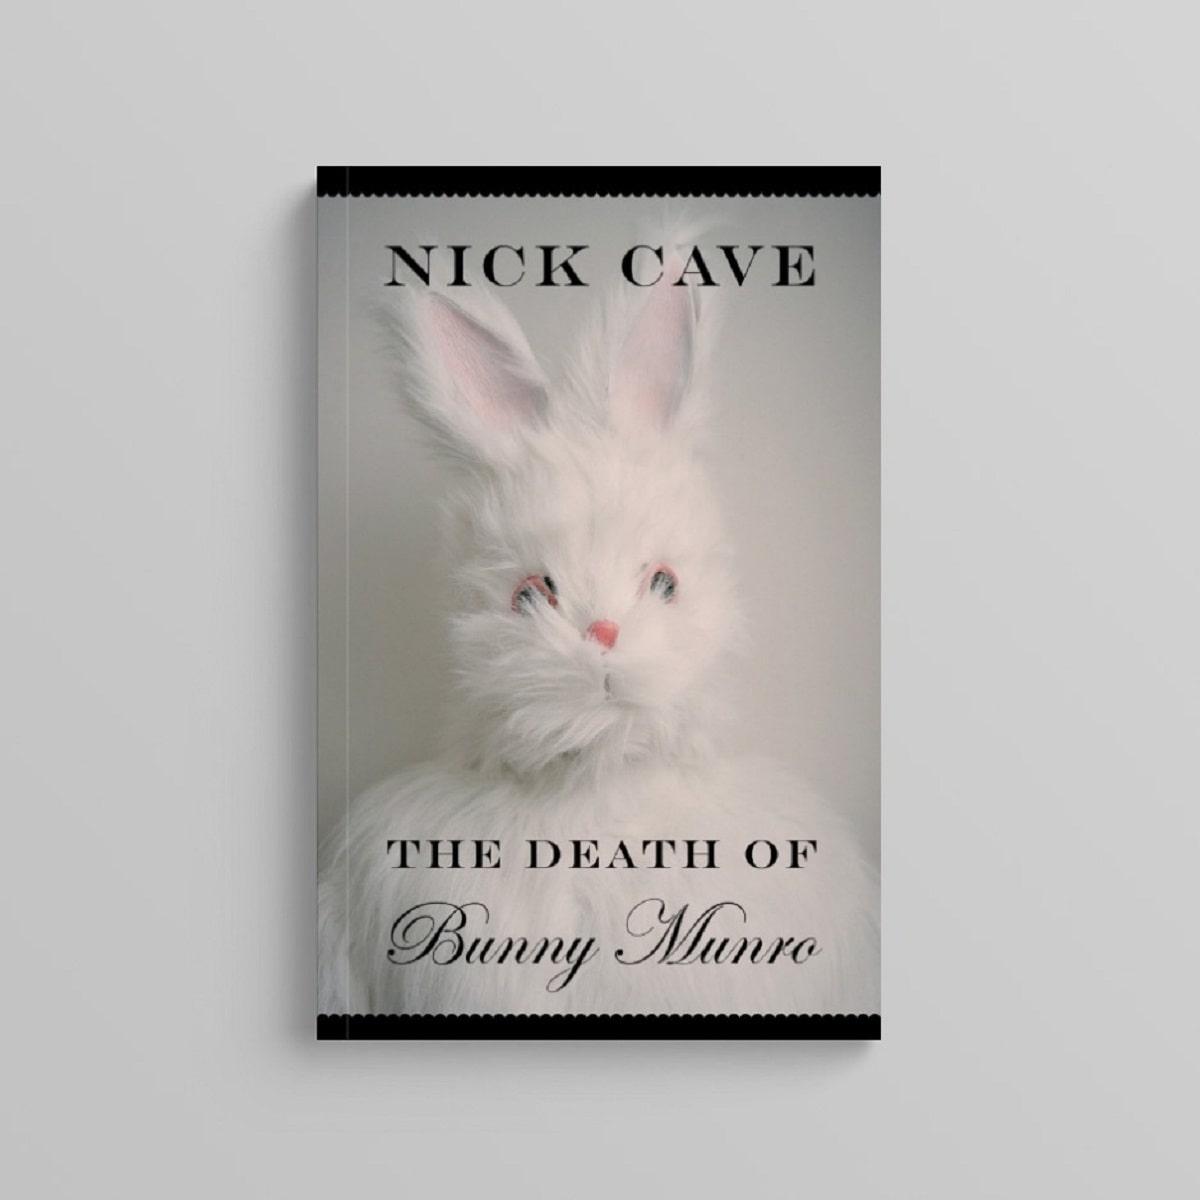 Tapa de The Death of Bunny Munro, libro de Nick Cave